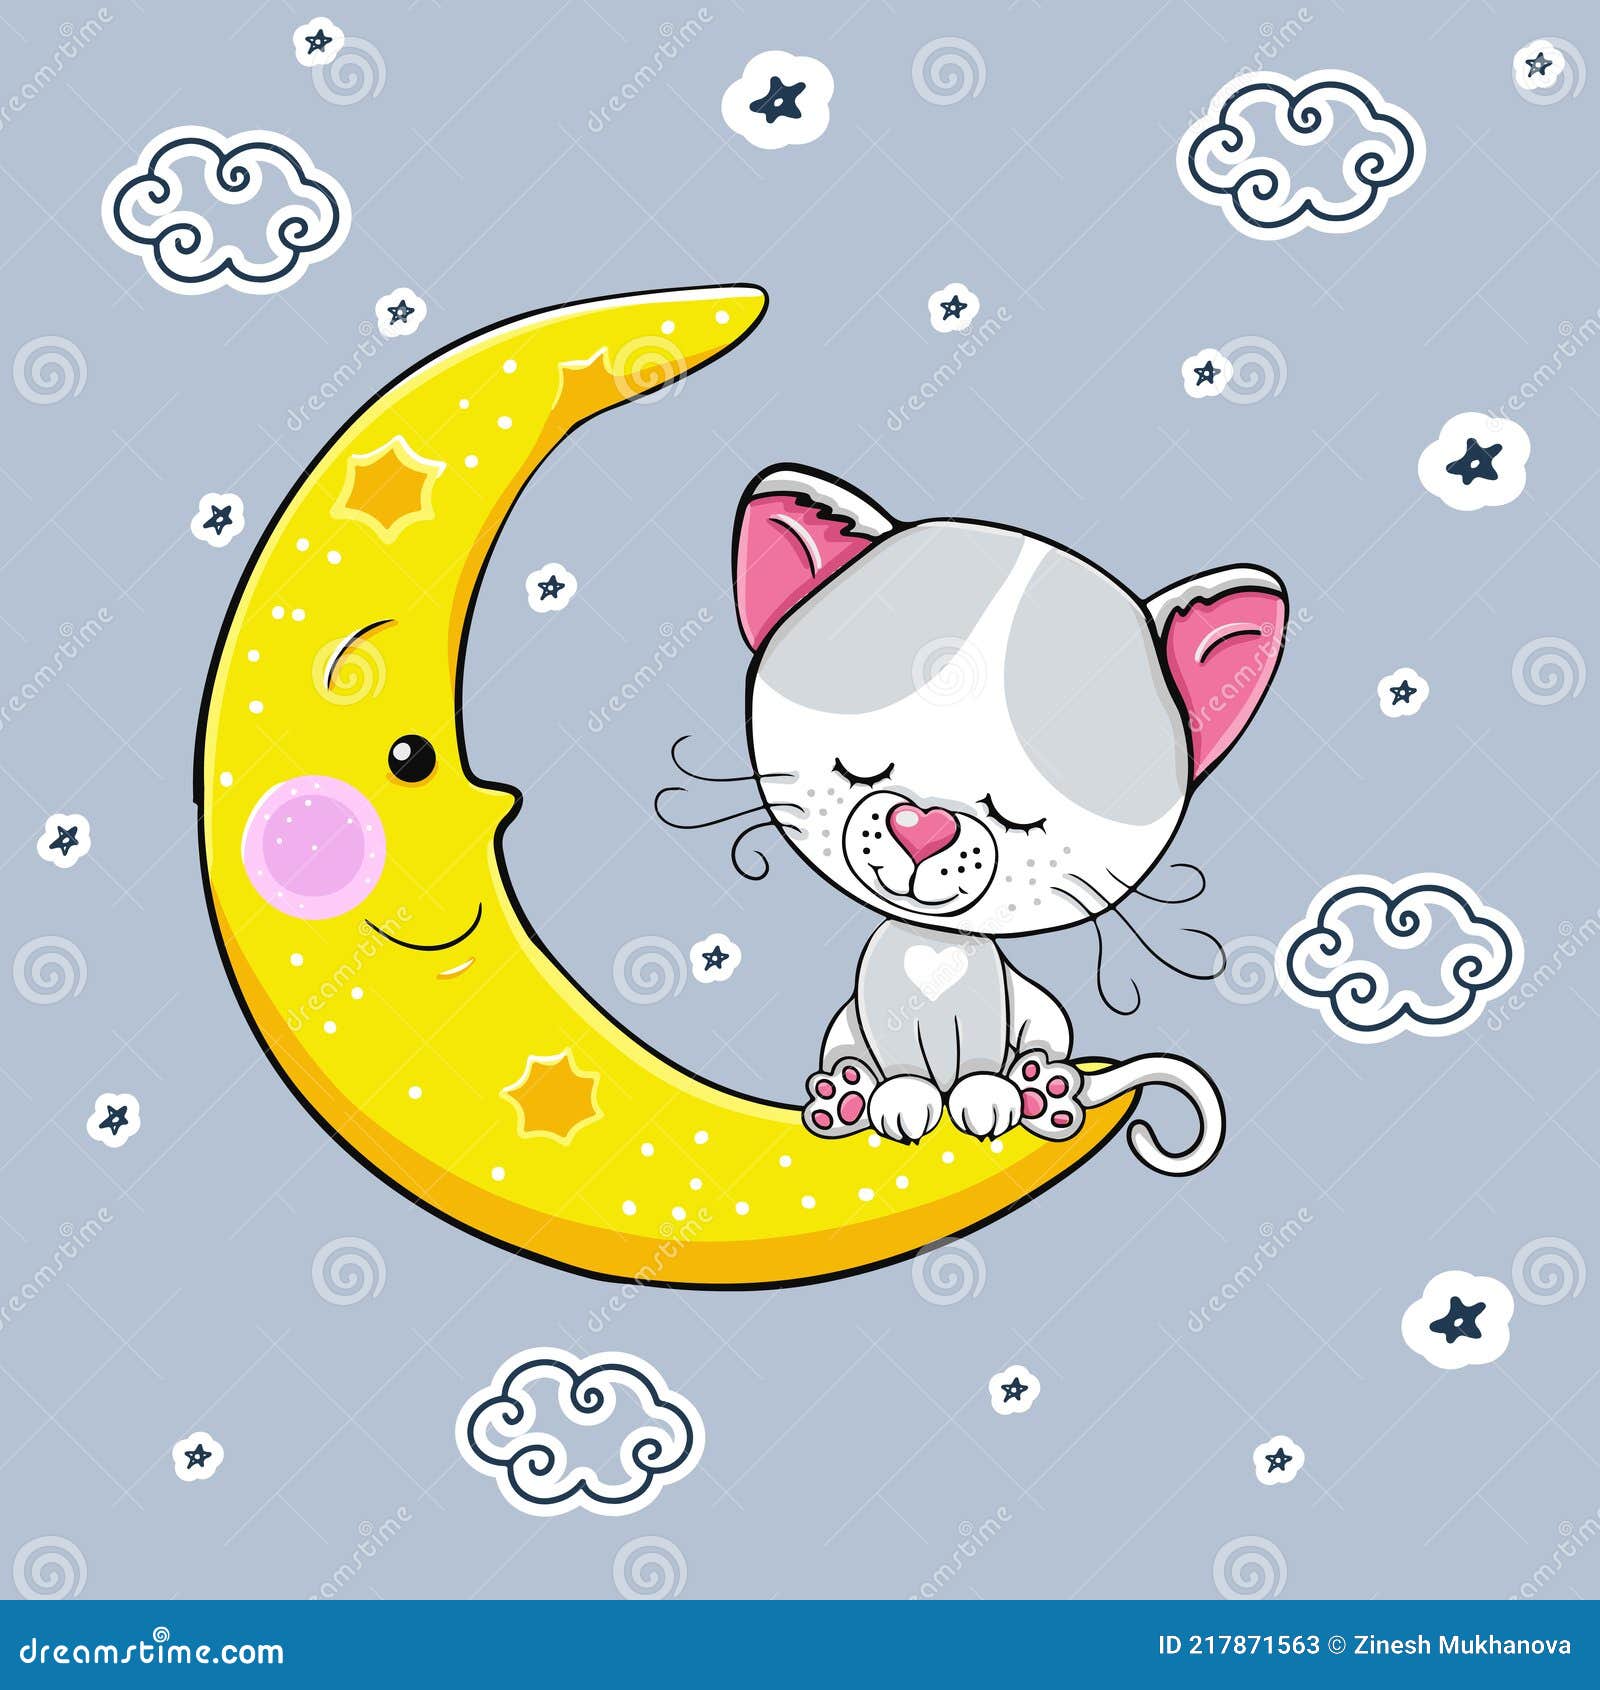 Cute Cartoon White Gray Cat Sleeps on the Moon. Vector Illustration. a  Beautiful Kitten Stock Vector - Illustration of dark, romantic: 217871563